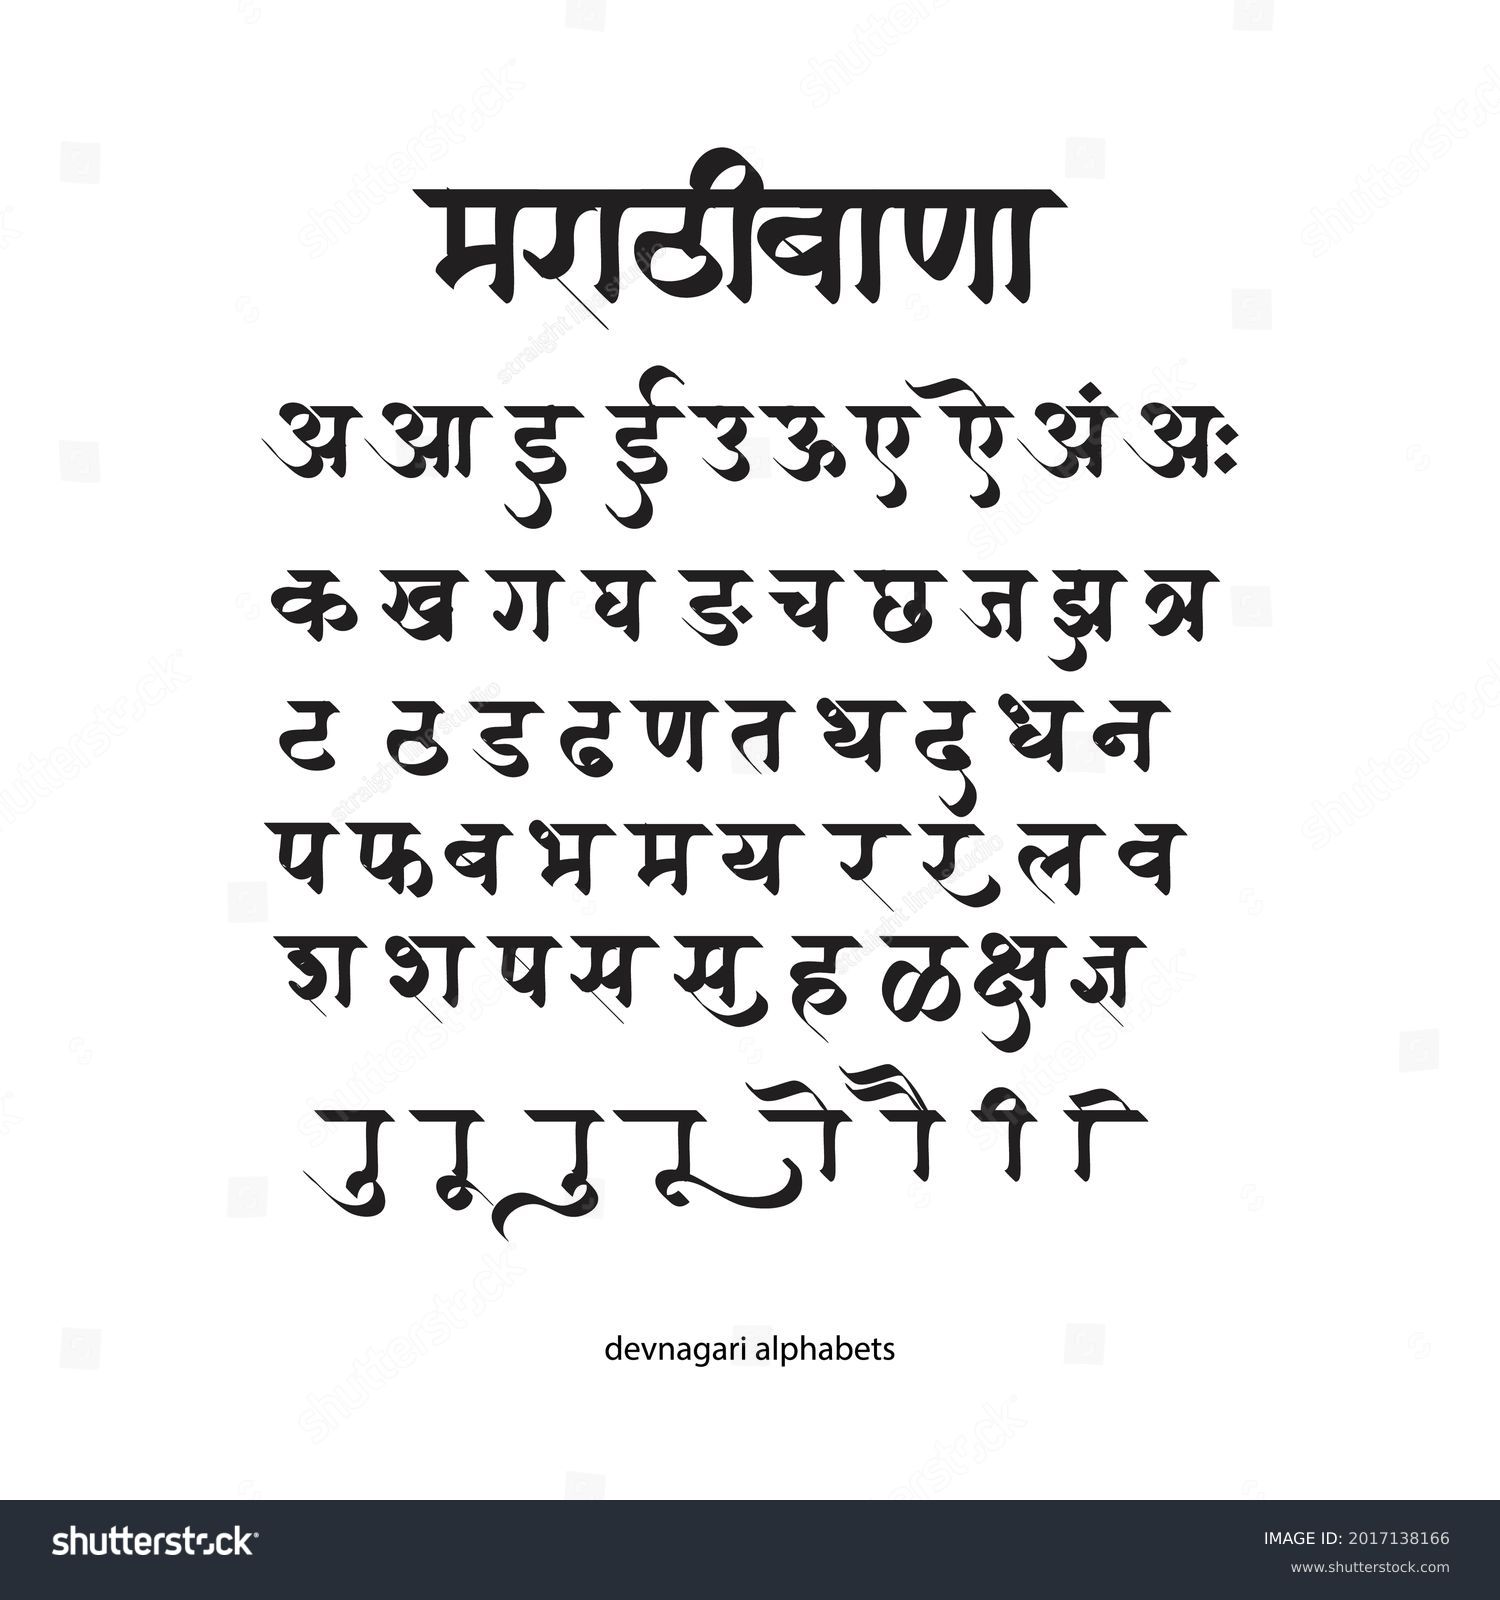 SVG of Vector Handmade Devanagari  font for Indian languages Hindi, Sanskrit and Marathi. svg